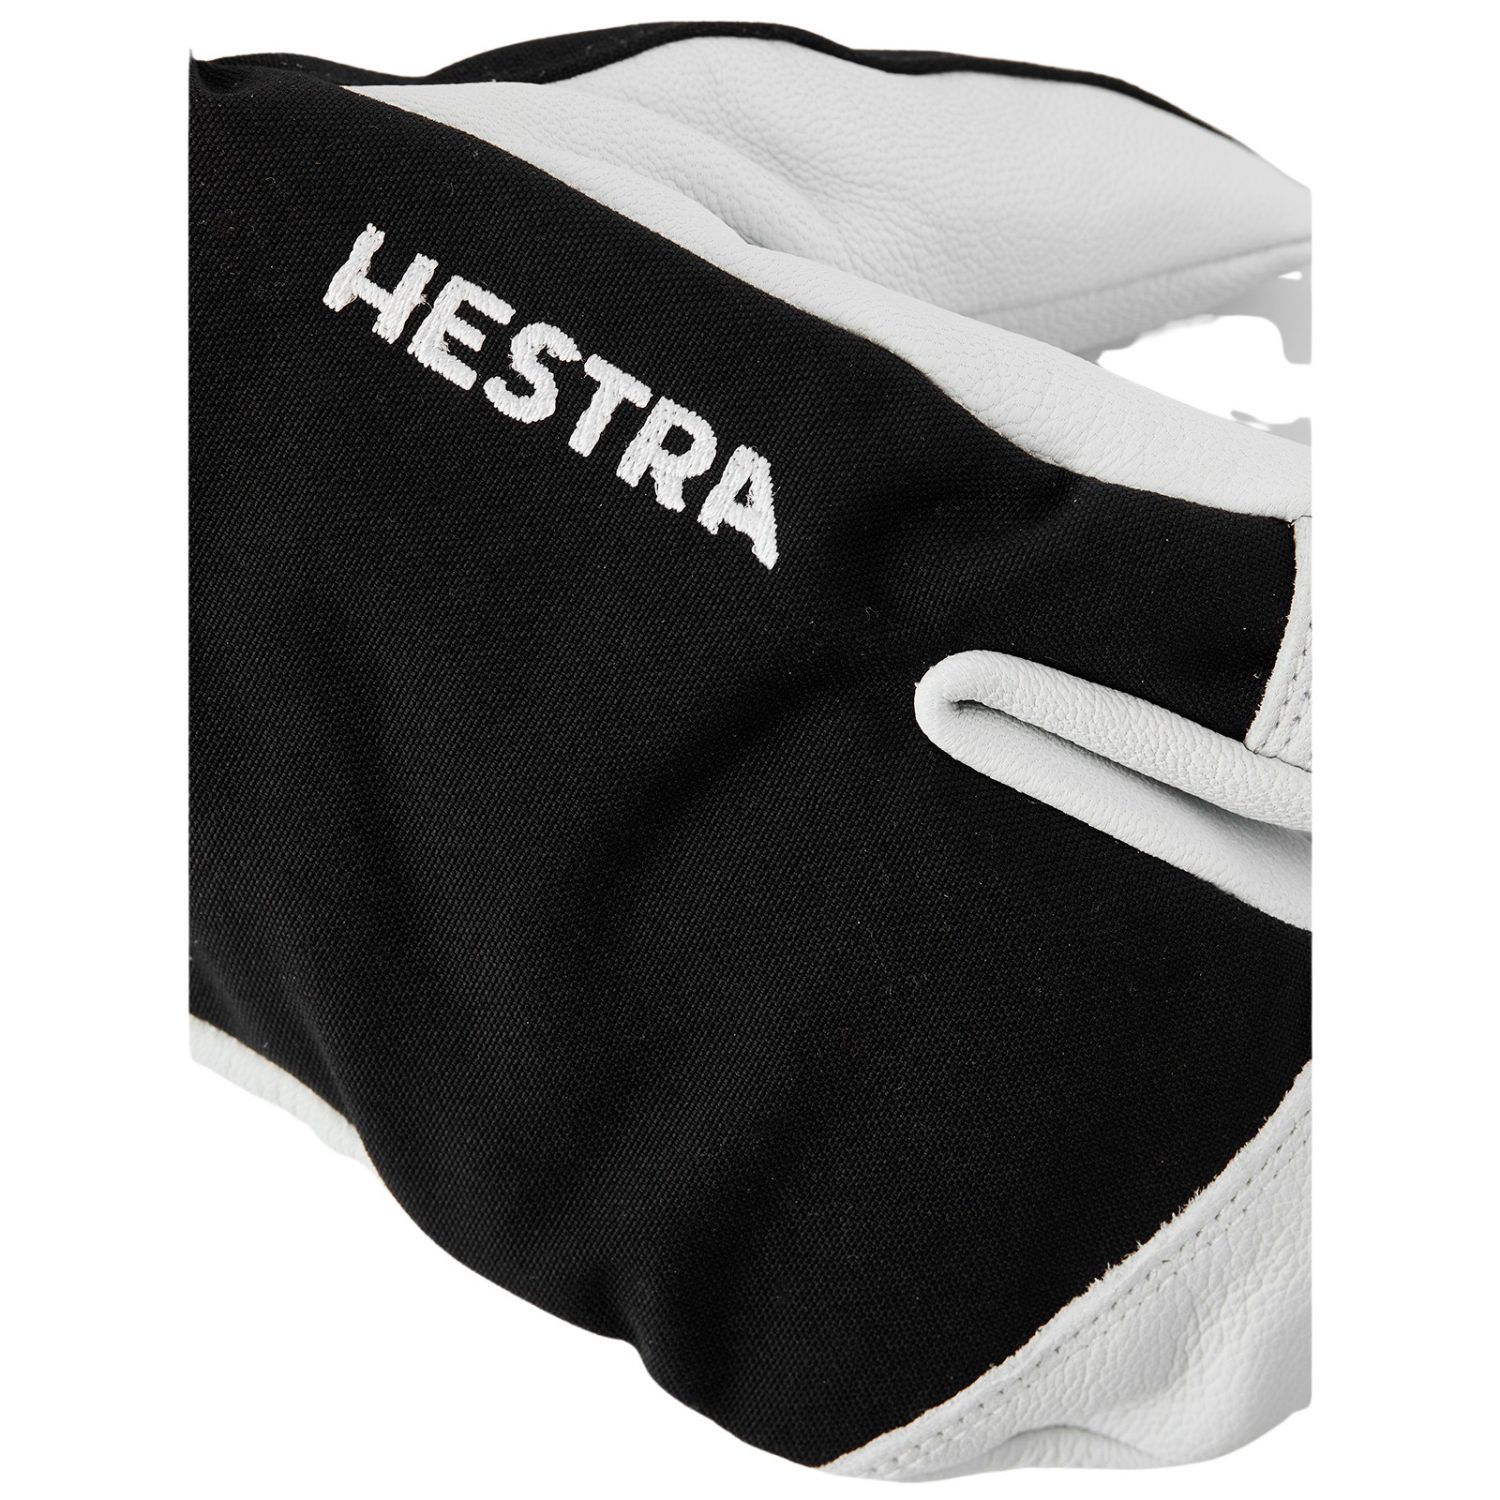 Hestra Army Leather Heli 3-finger Skihansker, Junior, Black